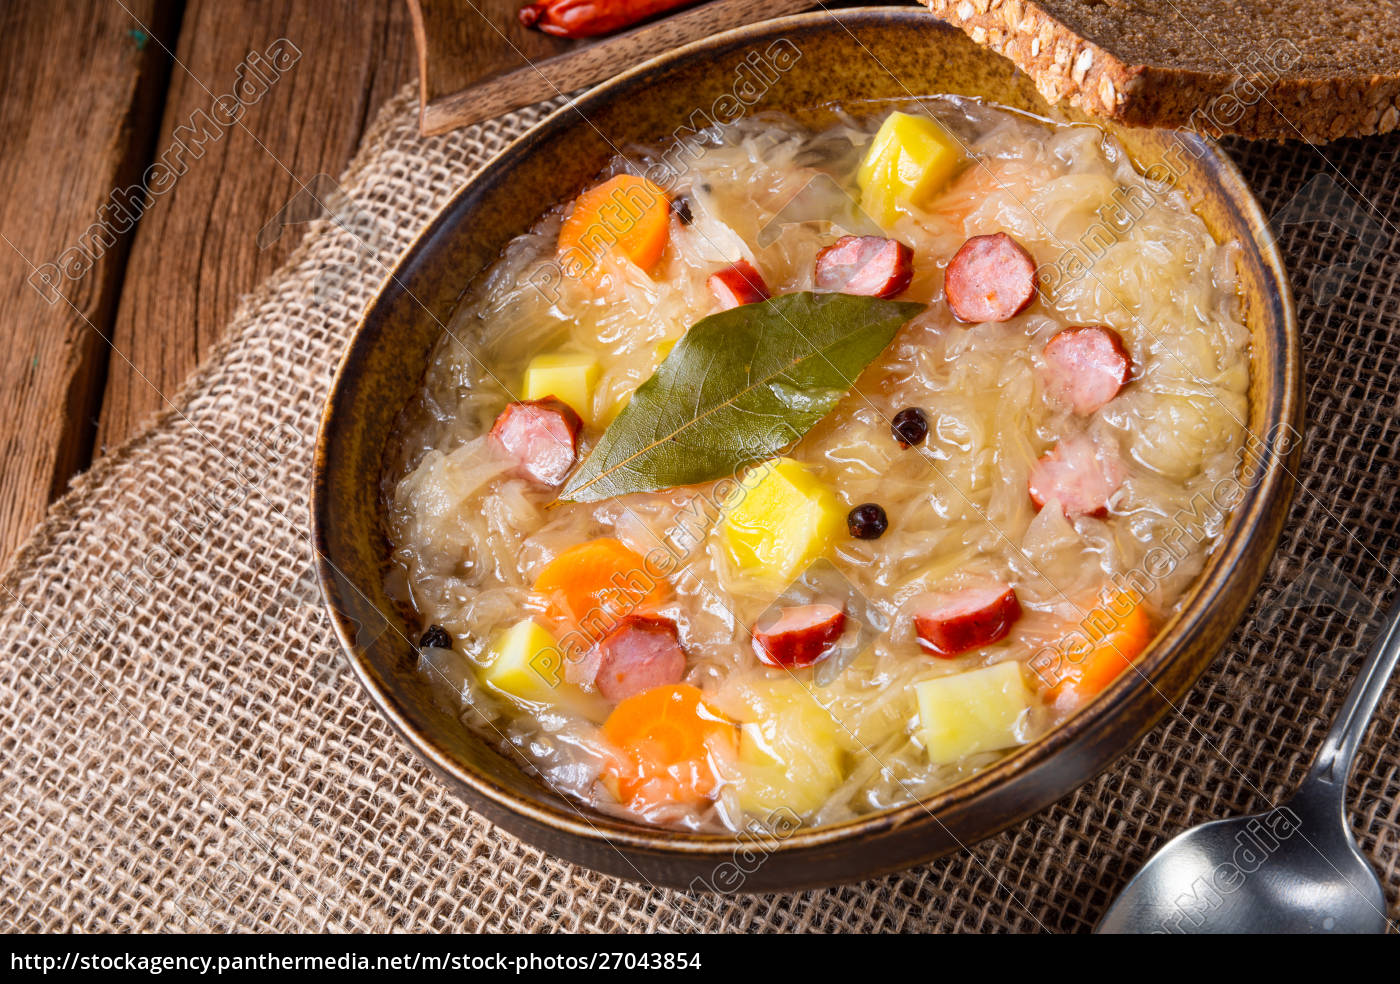 rustikale Sauerkrautsuppe mit Speck und Wurst - Stockfoto - #27043854 ...